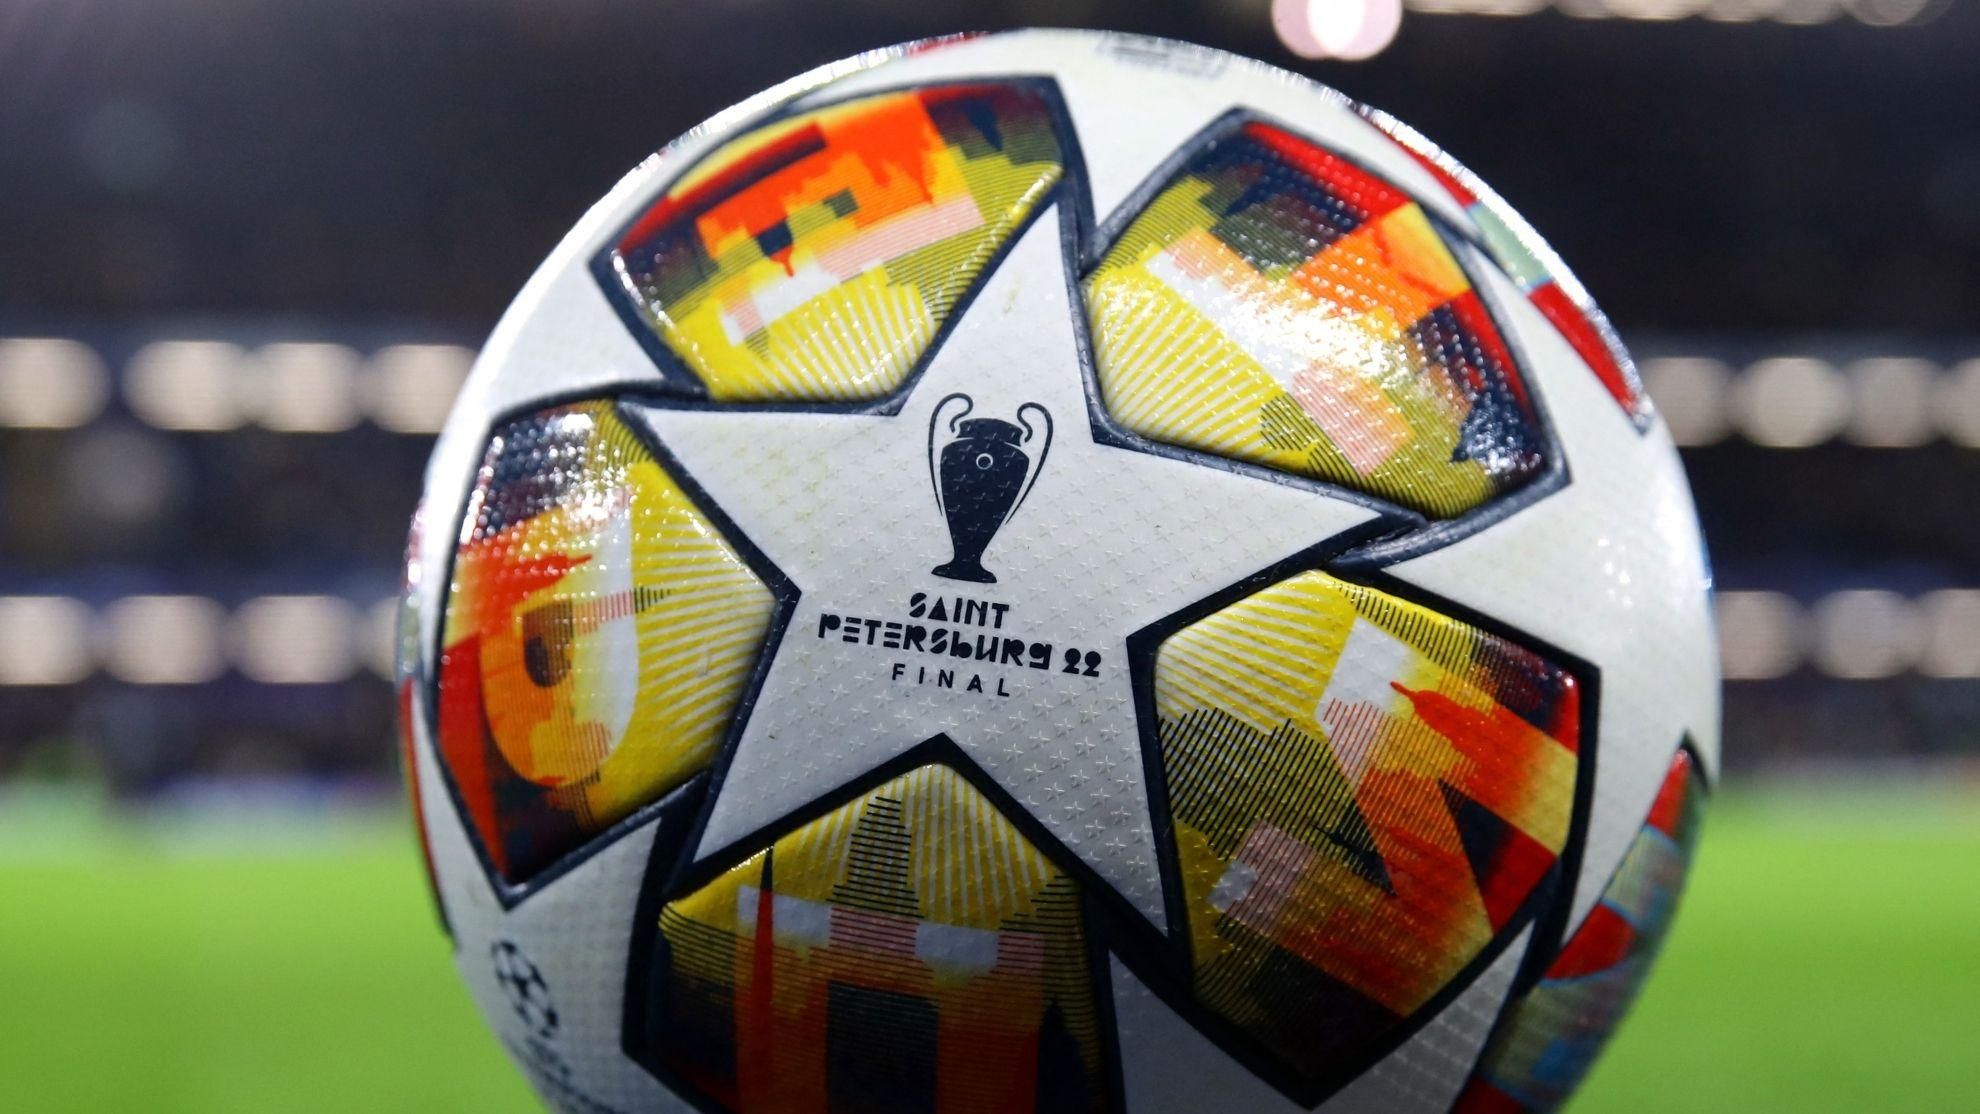 УЕФА перенес финал Лиги чемпионов по России, – Associated Press